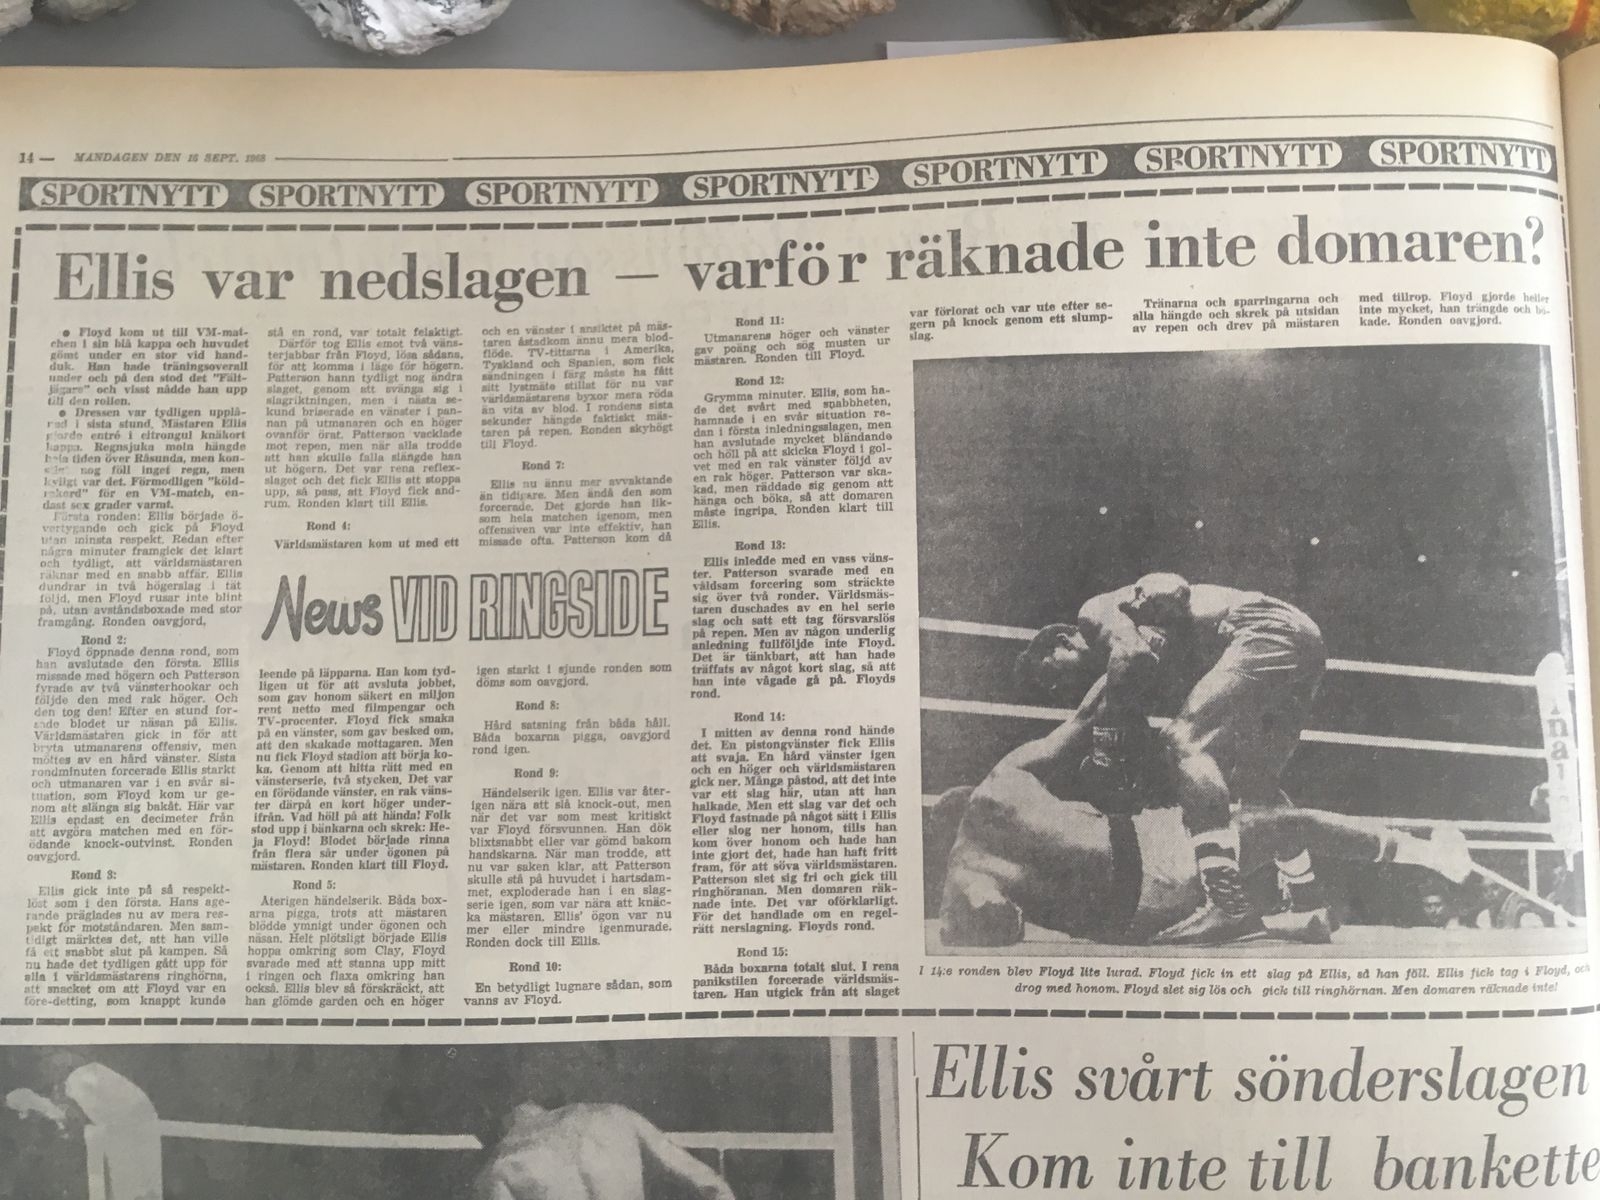 Signaturen News (Sven Edgren) sammanfattar matchen rond för rond i BLT den 16 september 1968.